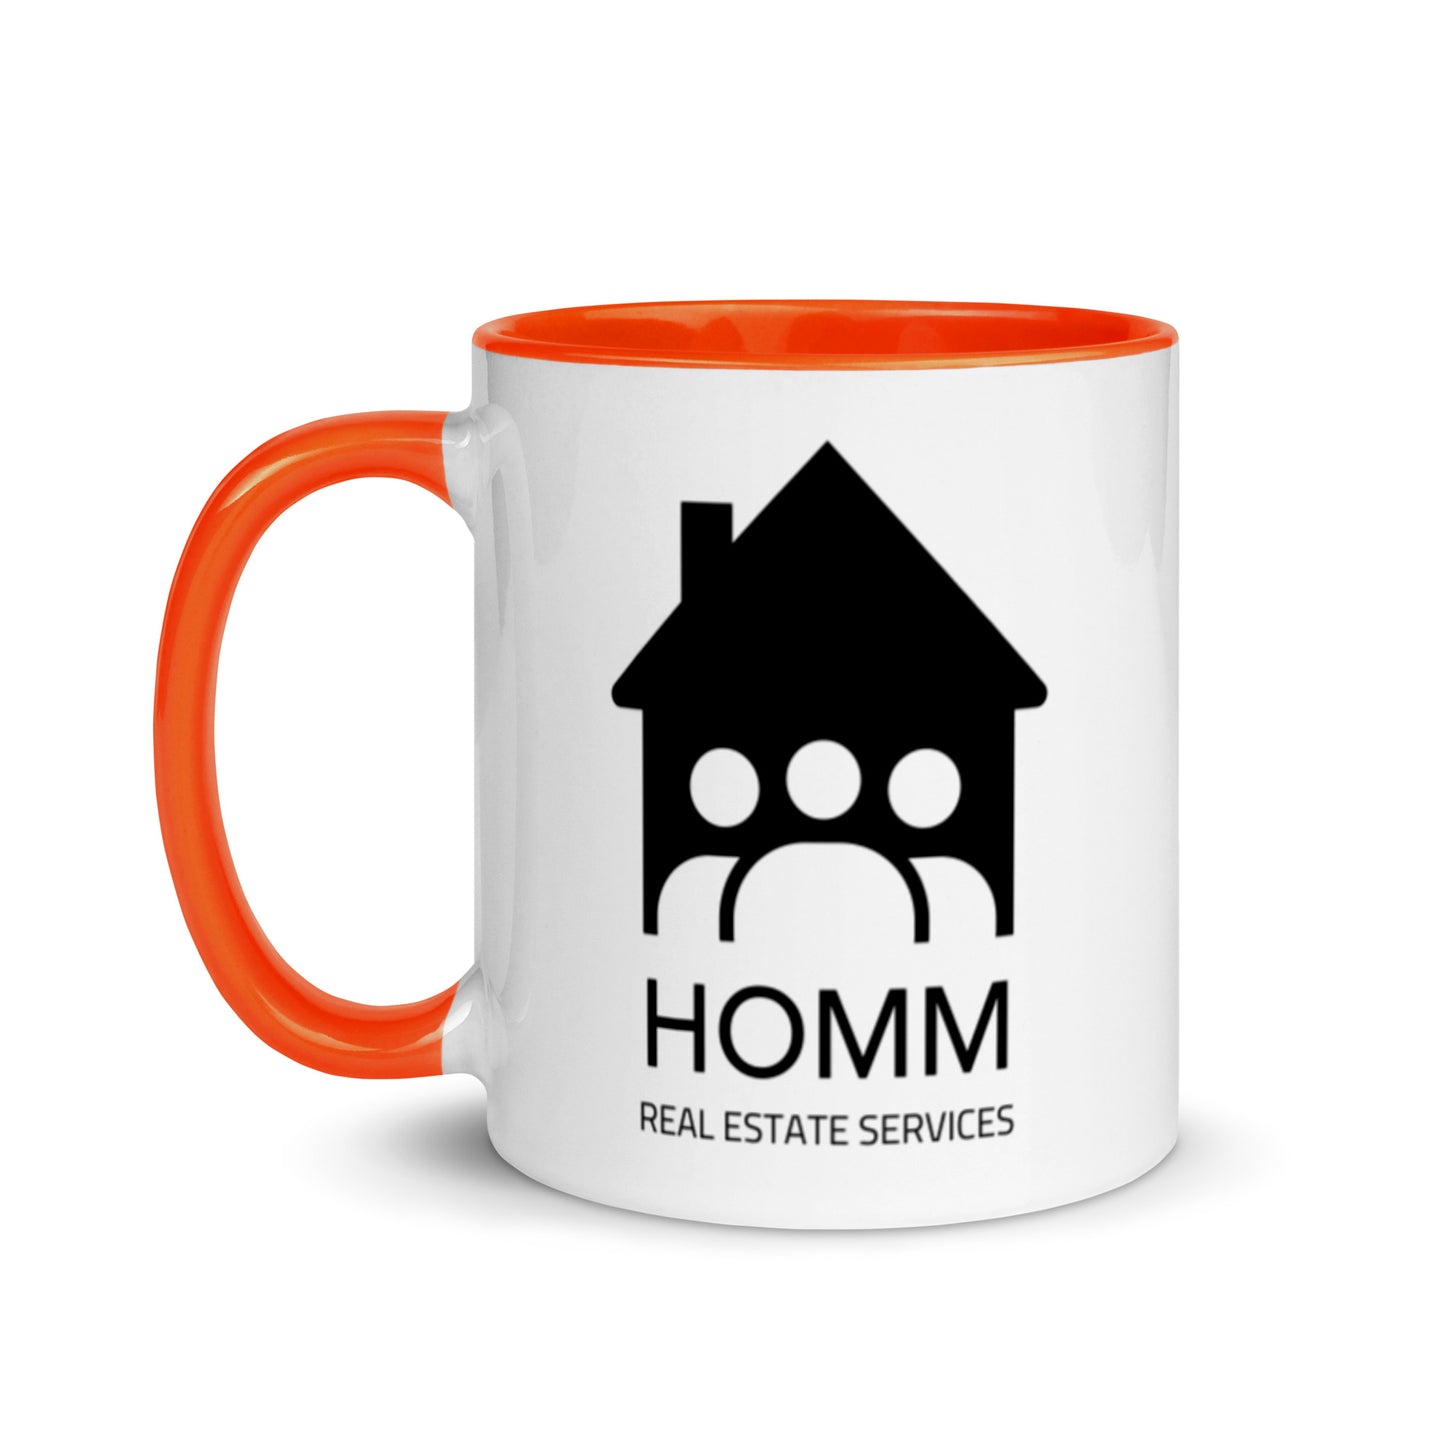 HOMM Mug - Choose Your Color